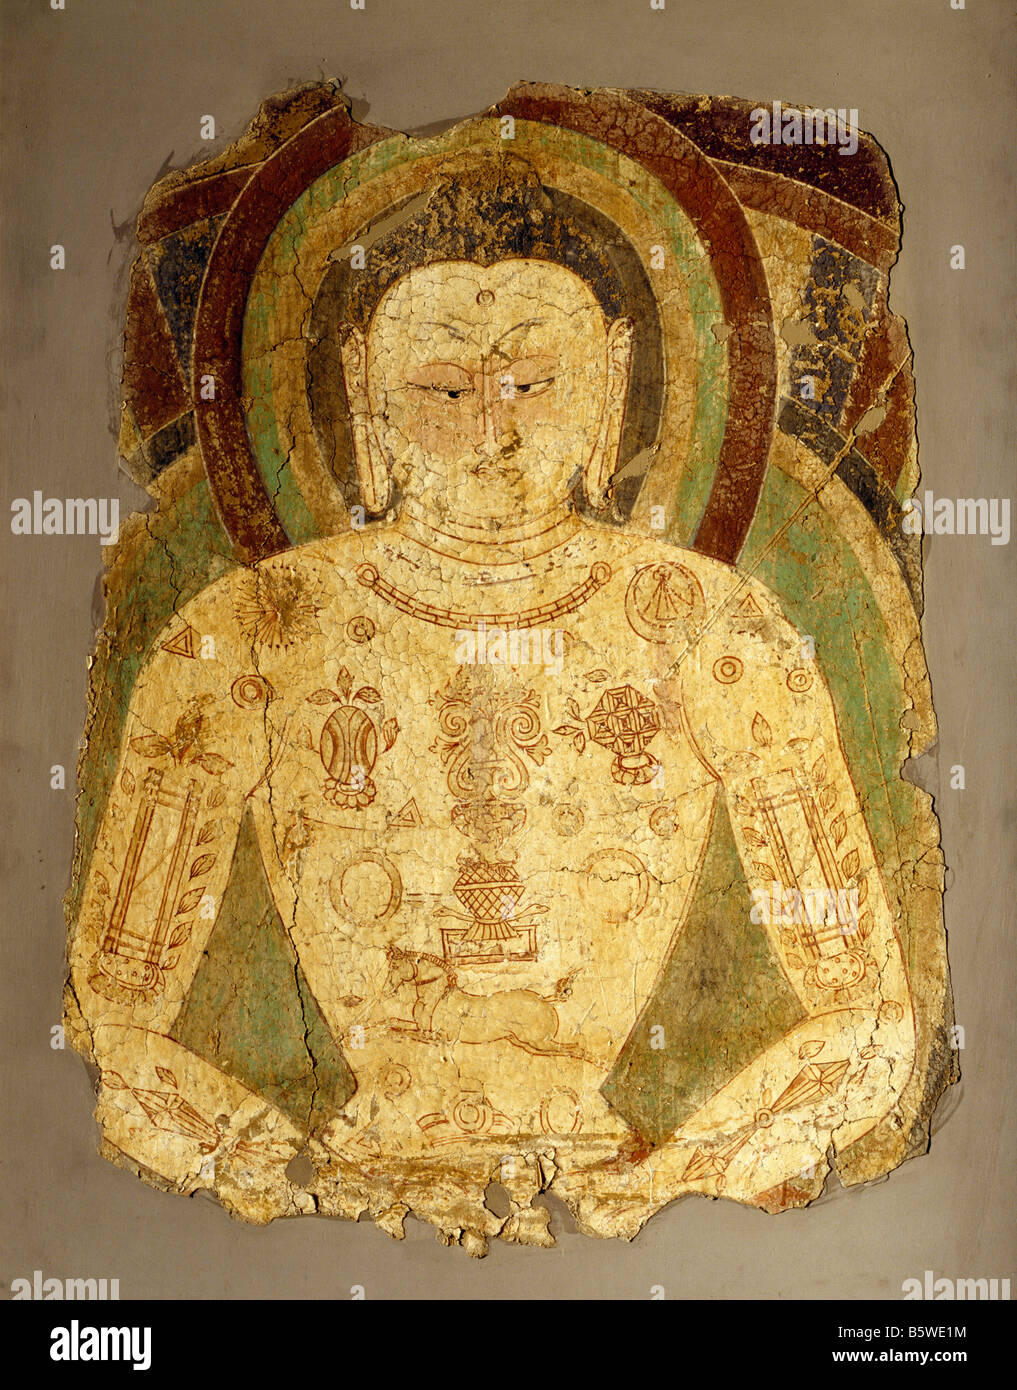 Vairochana Bouddha peinture murale de l'Asie centrale Balawaste 7-8 e siècle. Musée national de New Delhi Inde har. D 75,8 x 56 Banque D'Images